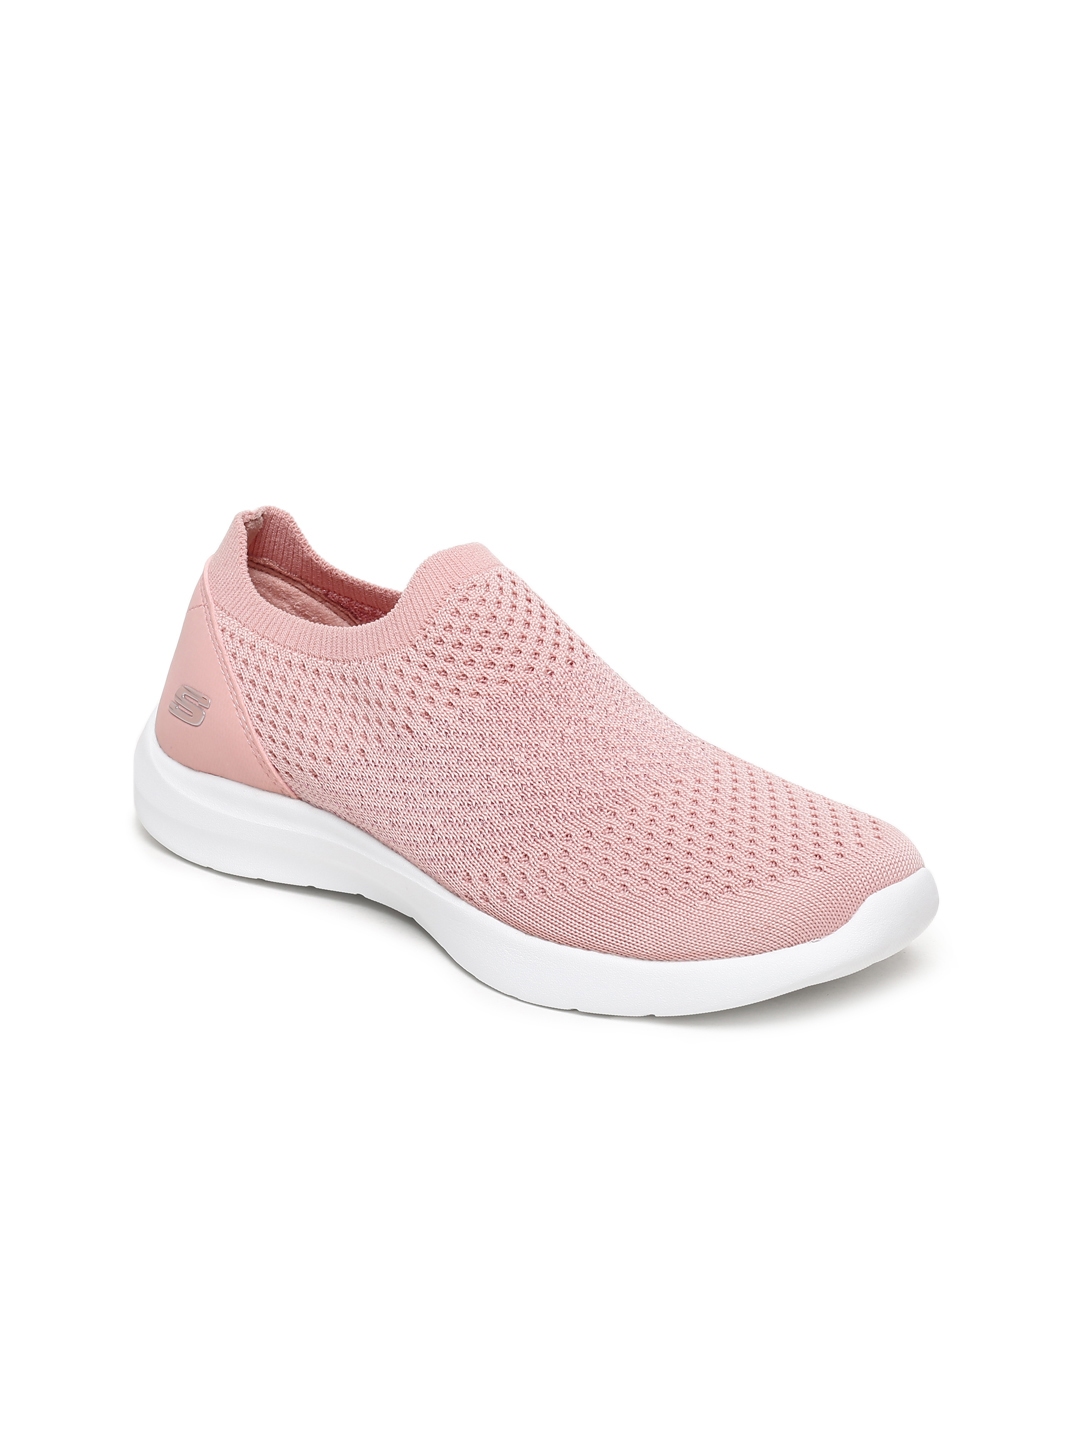 Buy Skechers Women Pink STUDIO COMFORT PREMIERE Sneakers - Casual Shoes ...